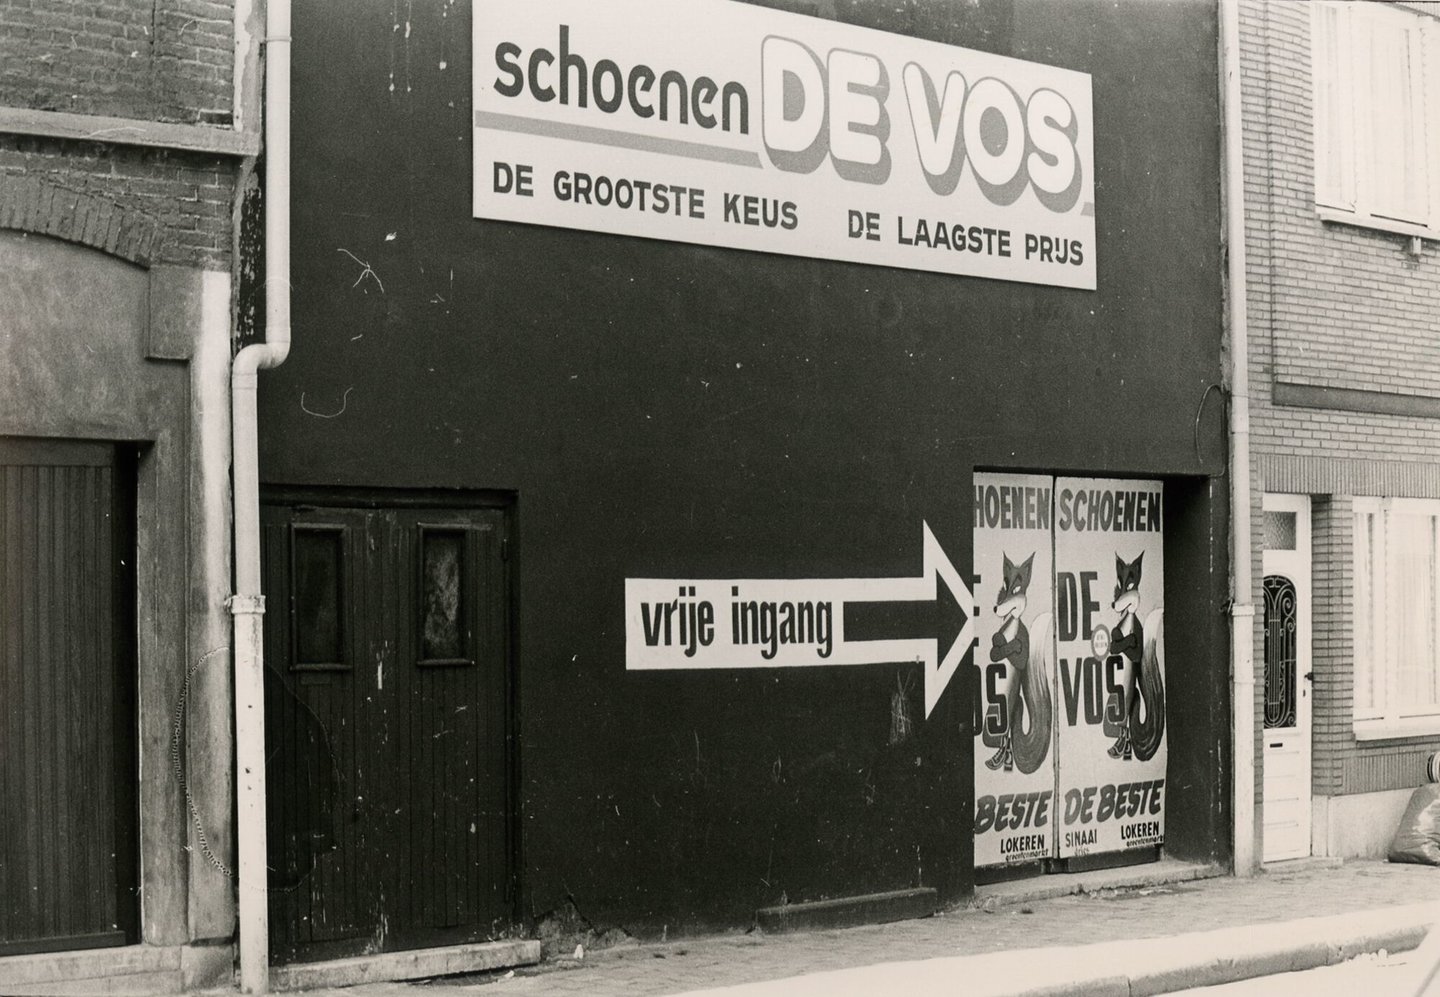 Zijgevel van schoenwinkel De Vos in Gent